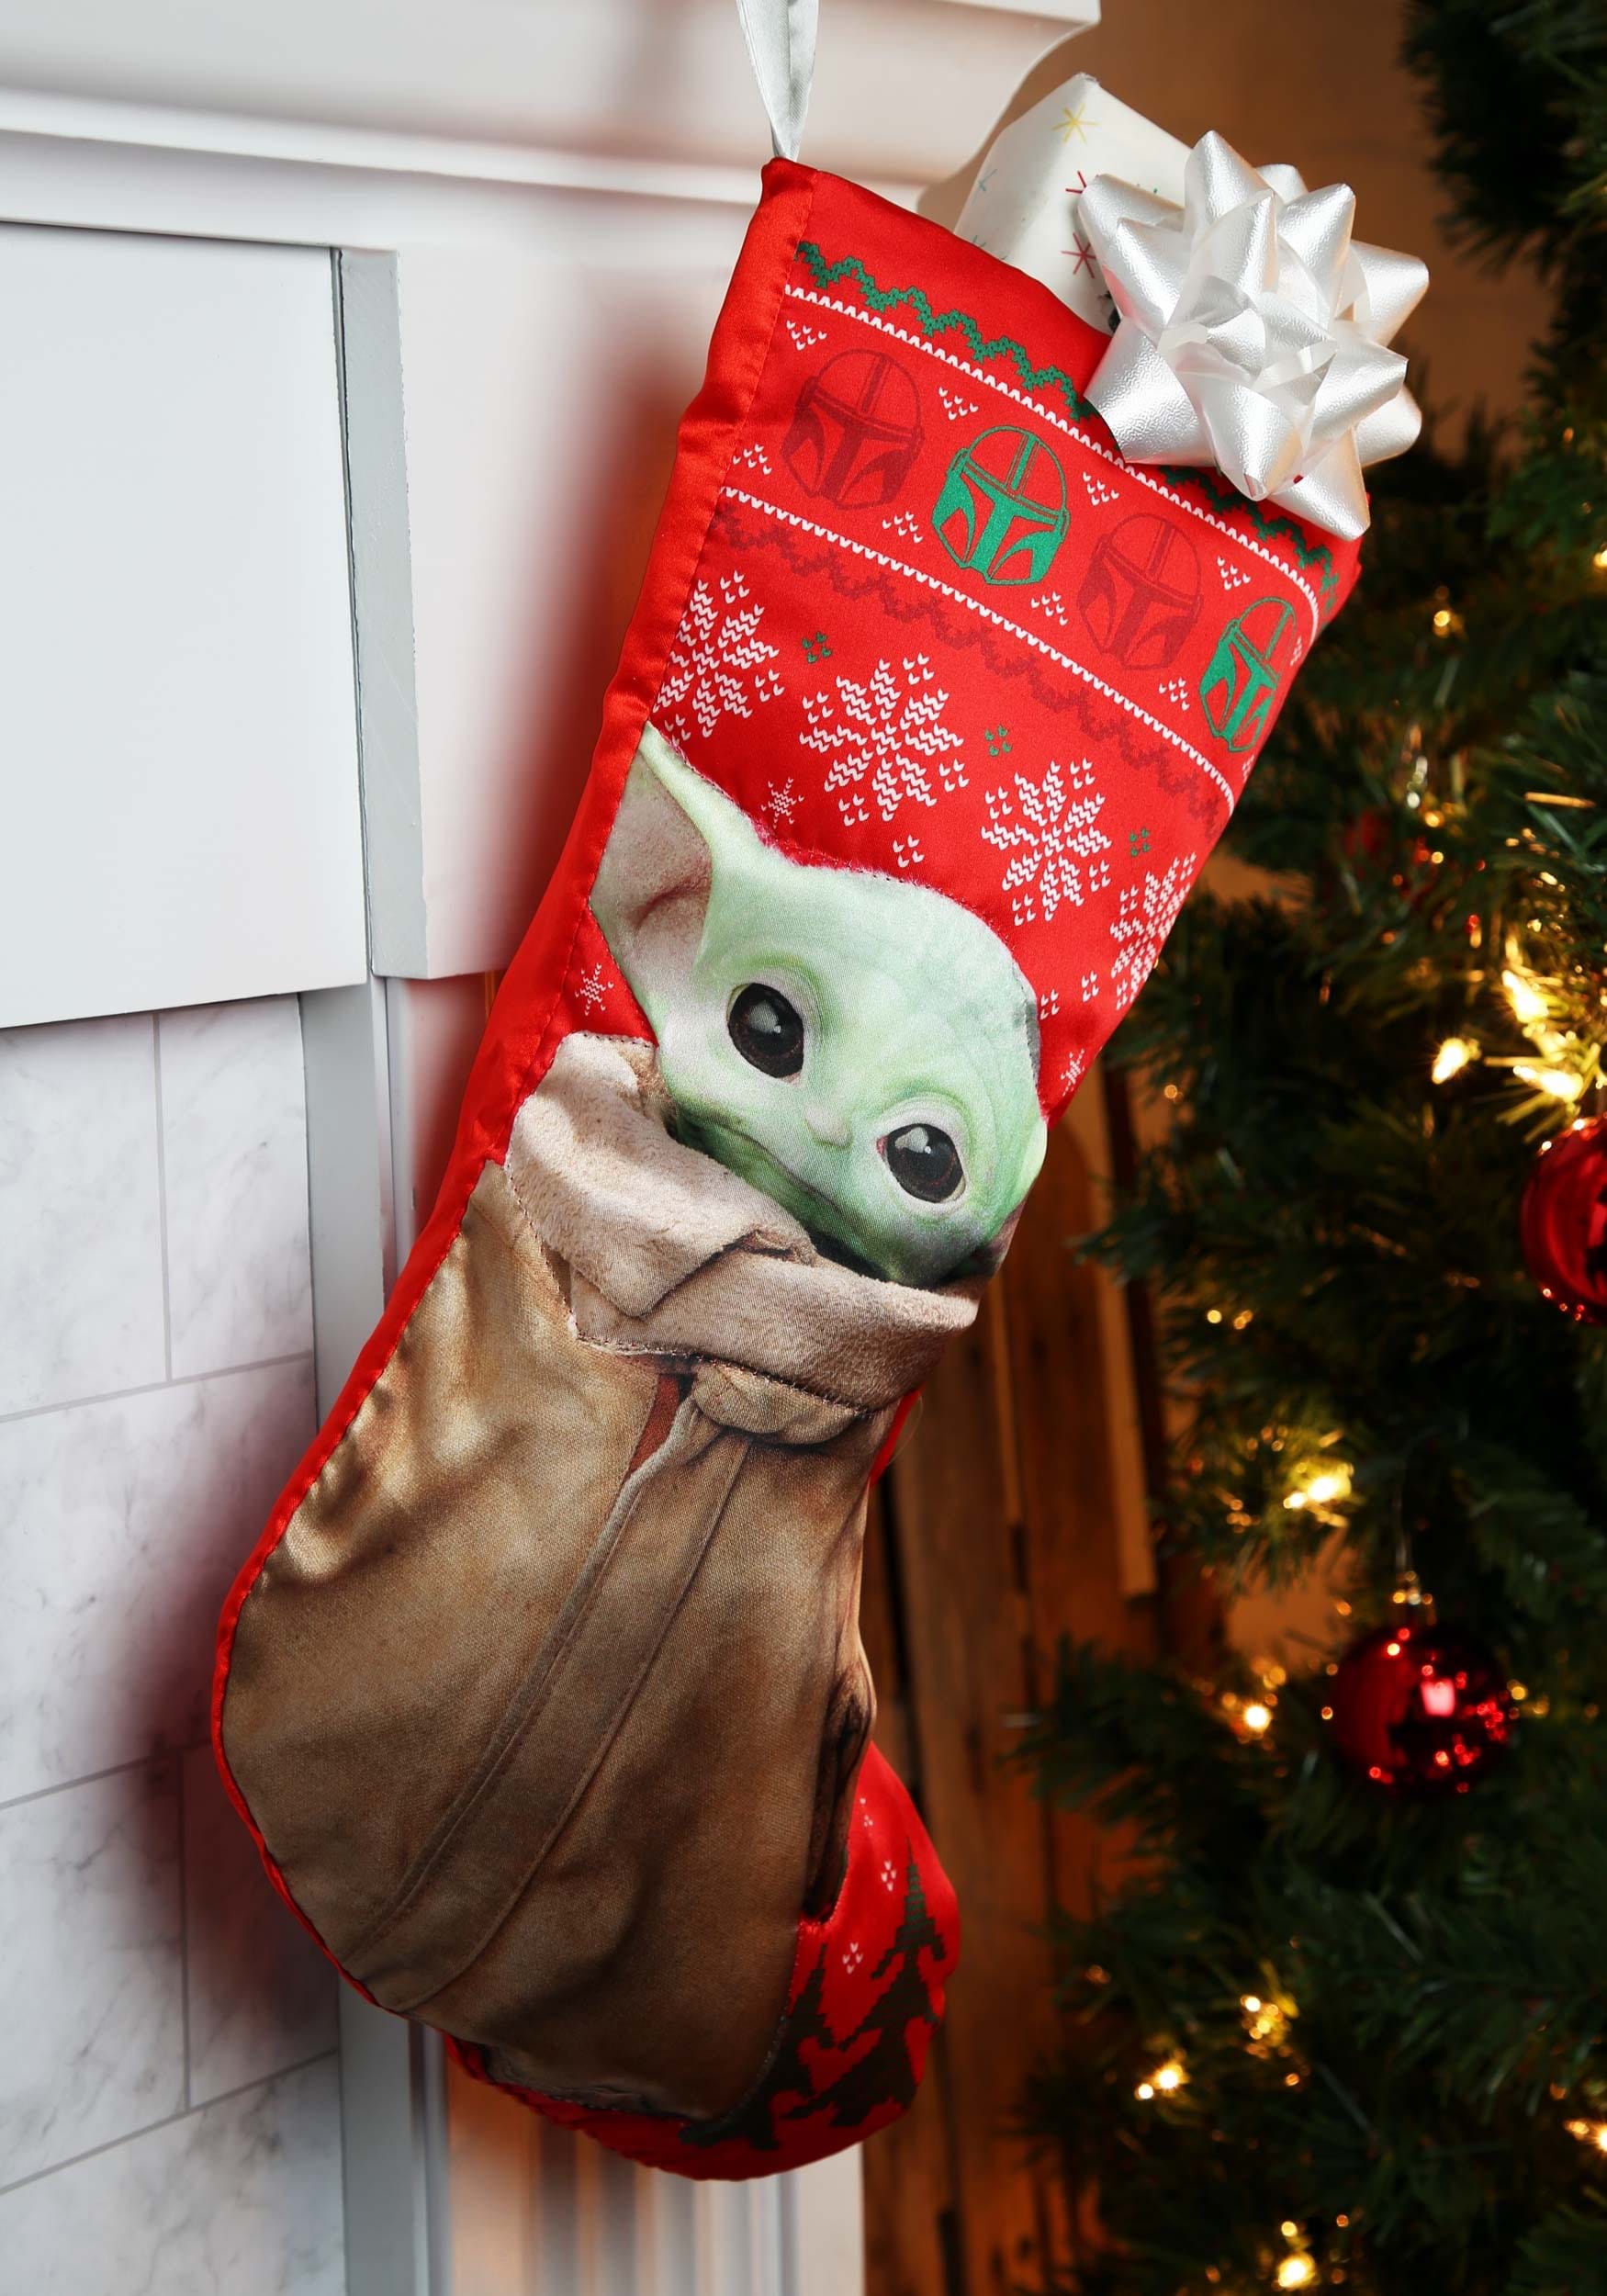 Star wars stockings